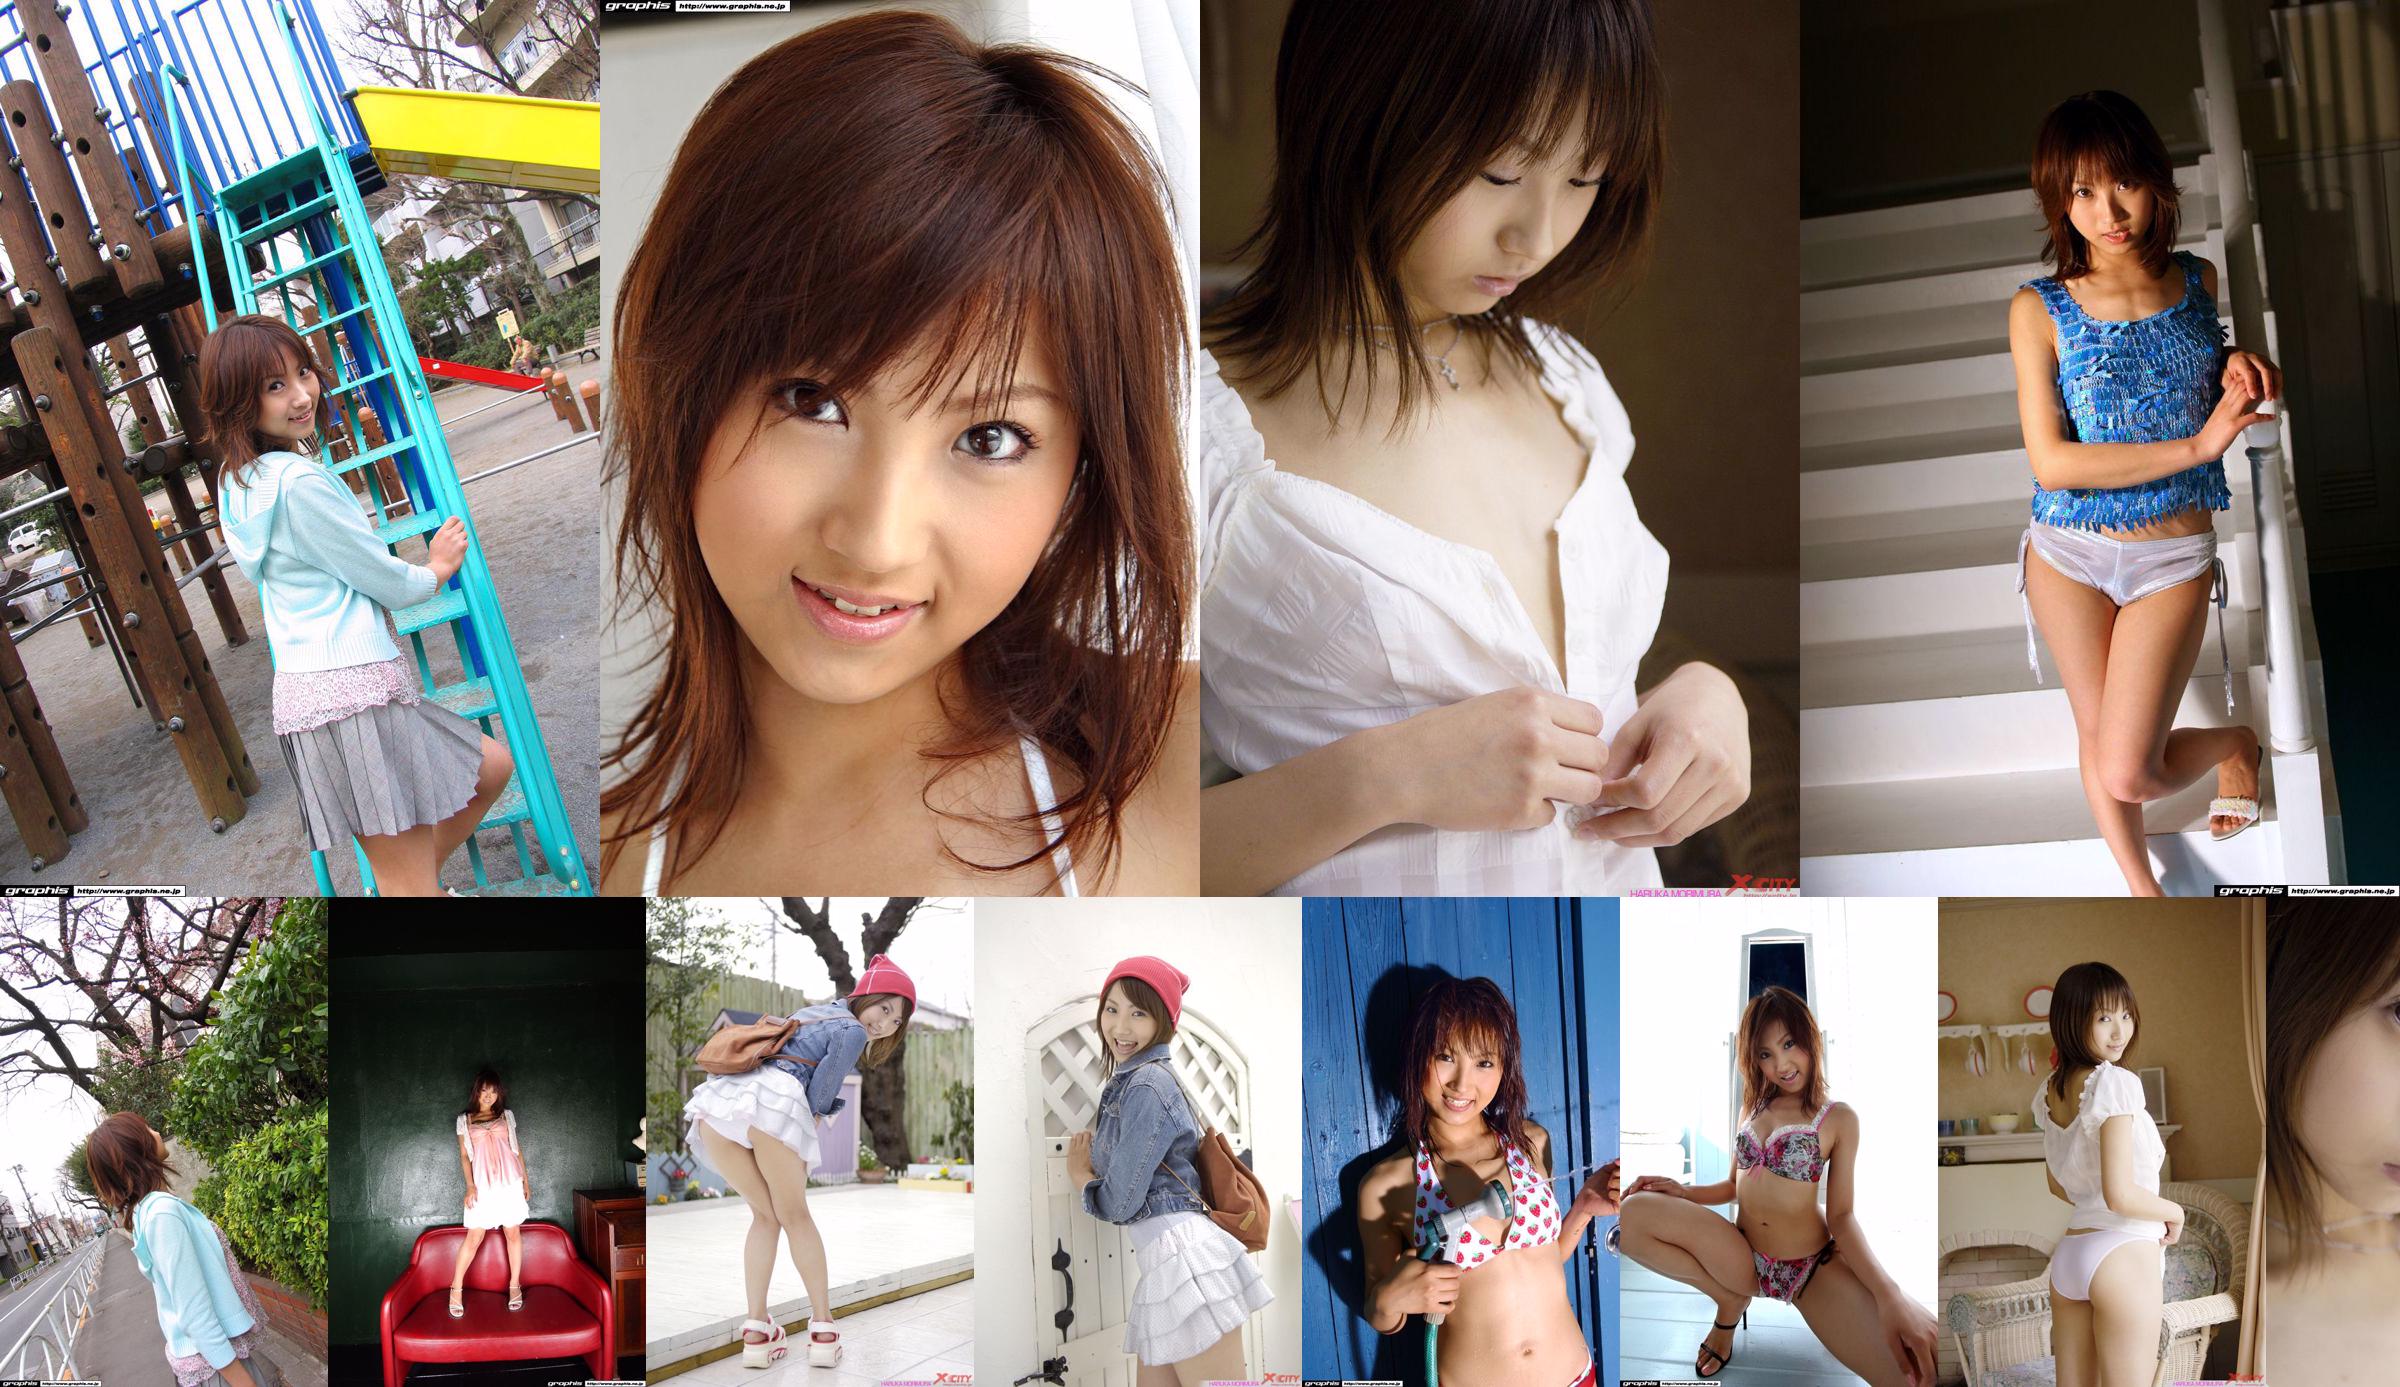 [X-City] WEB No.012 Haruka Morimura / Morimura Haruka "Morning Girl" No.2ef031 Pagina 3